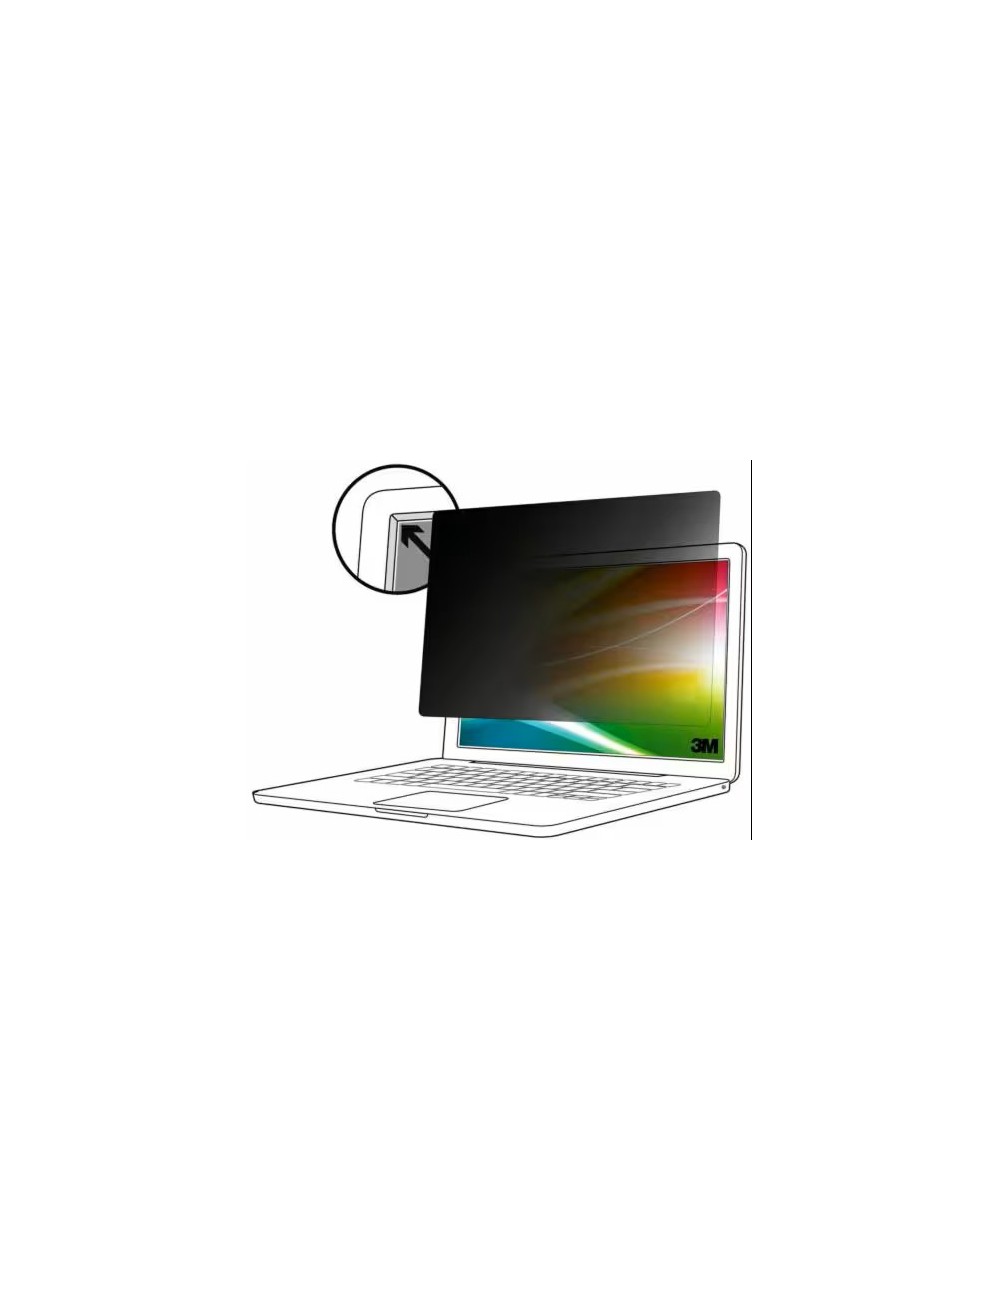 3M Filtro Privacy Bright Screen per 15.6 pol Laptop a Schermo Pieno, 16 9, BP156W9E